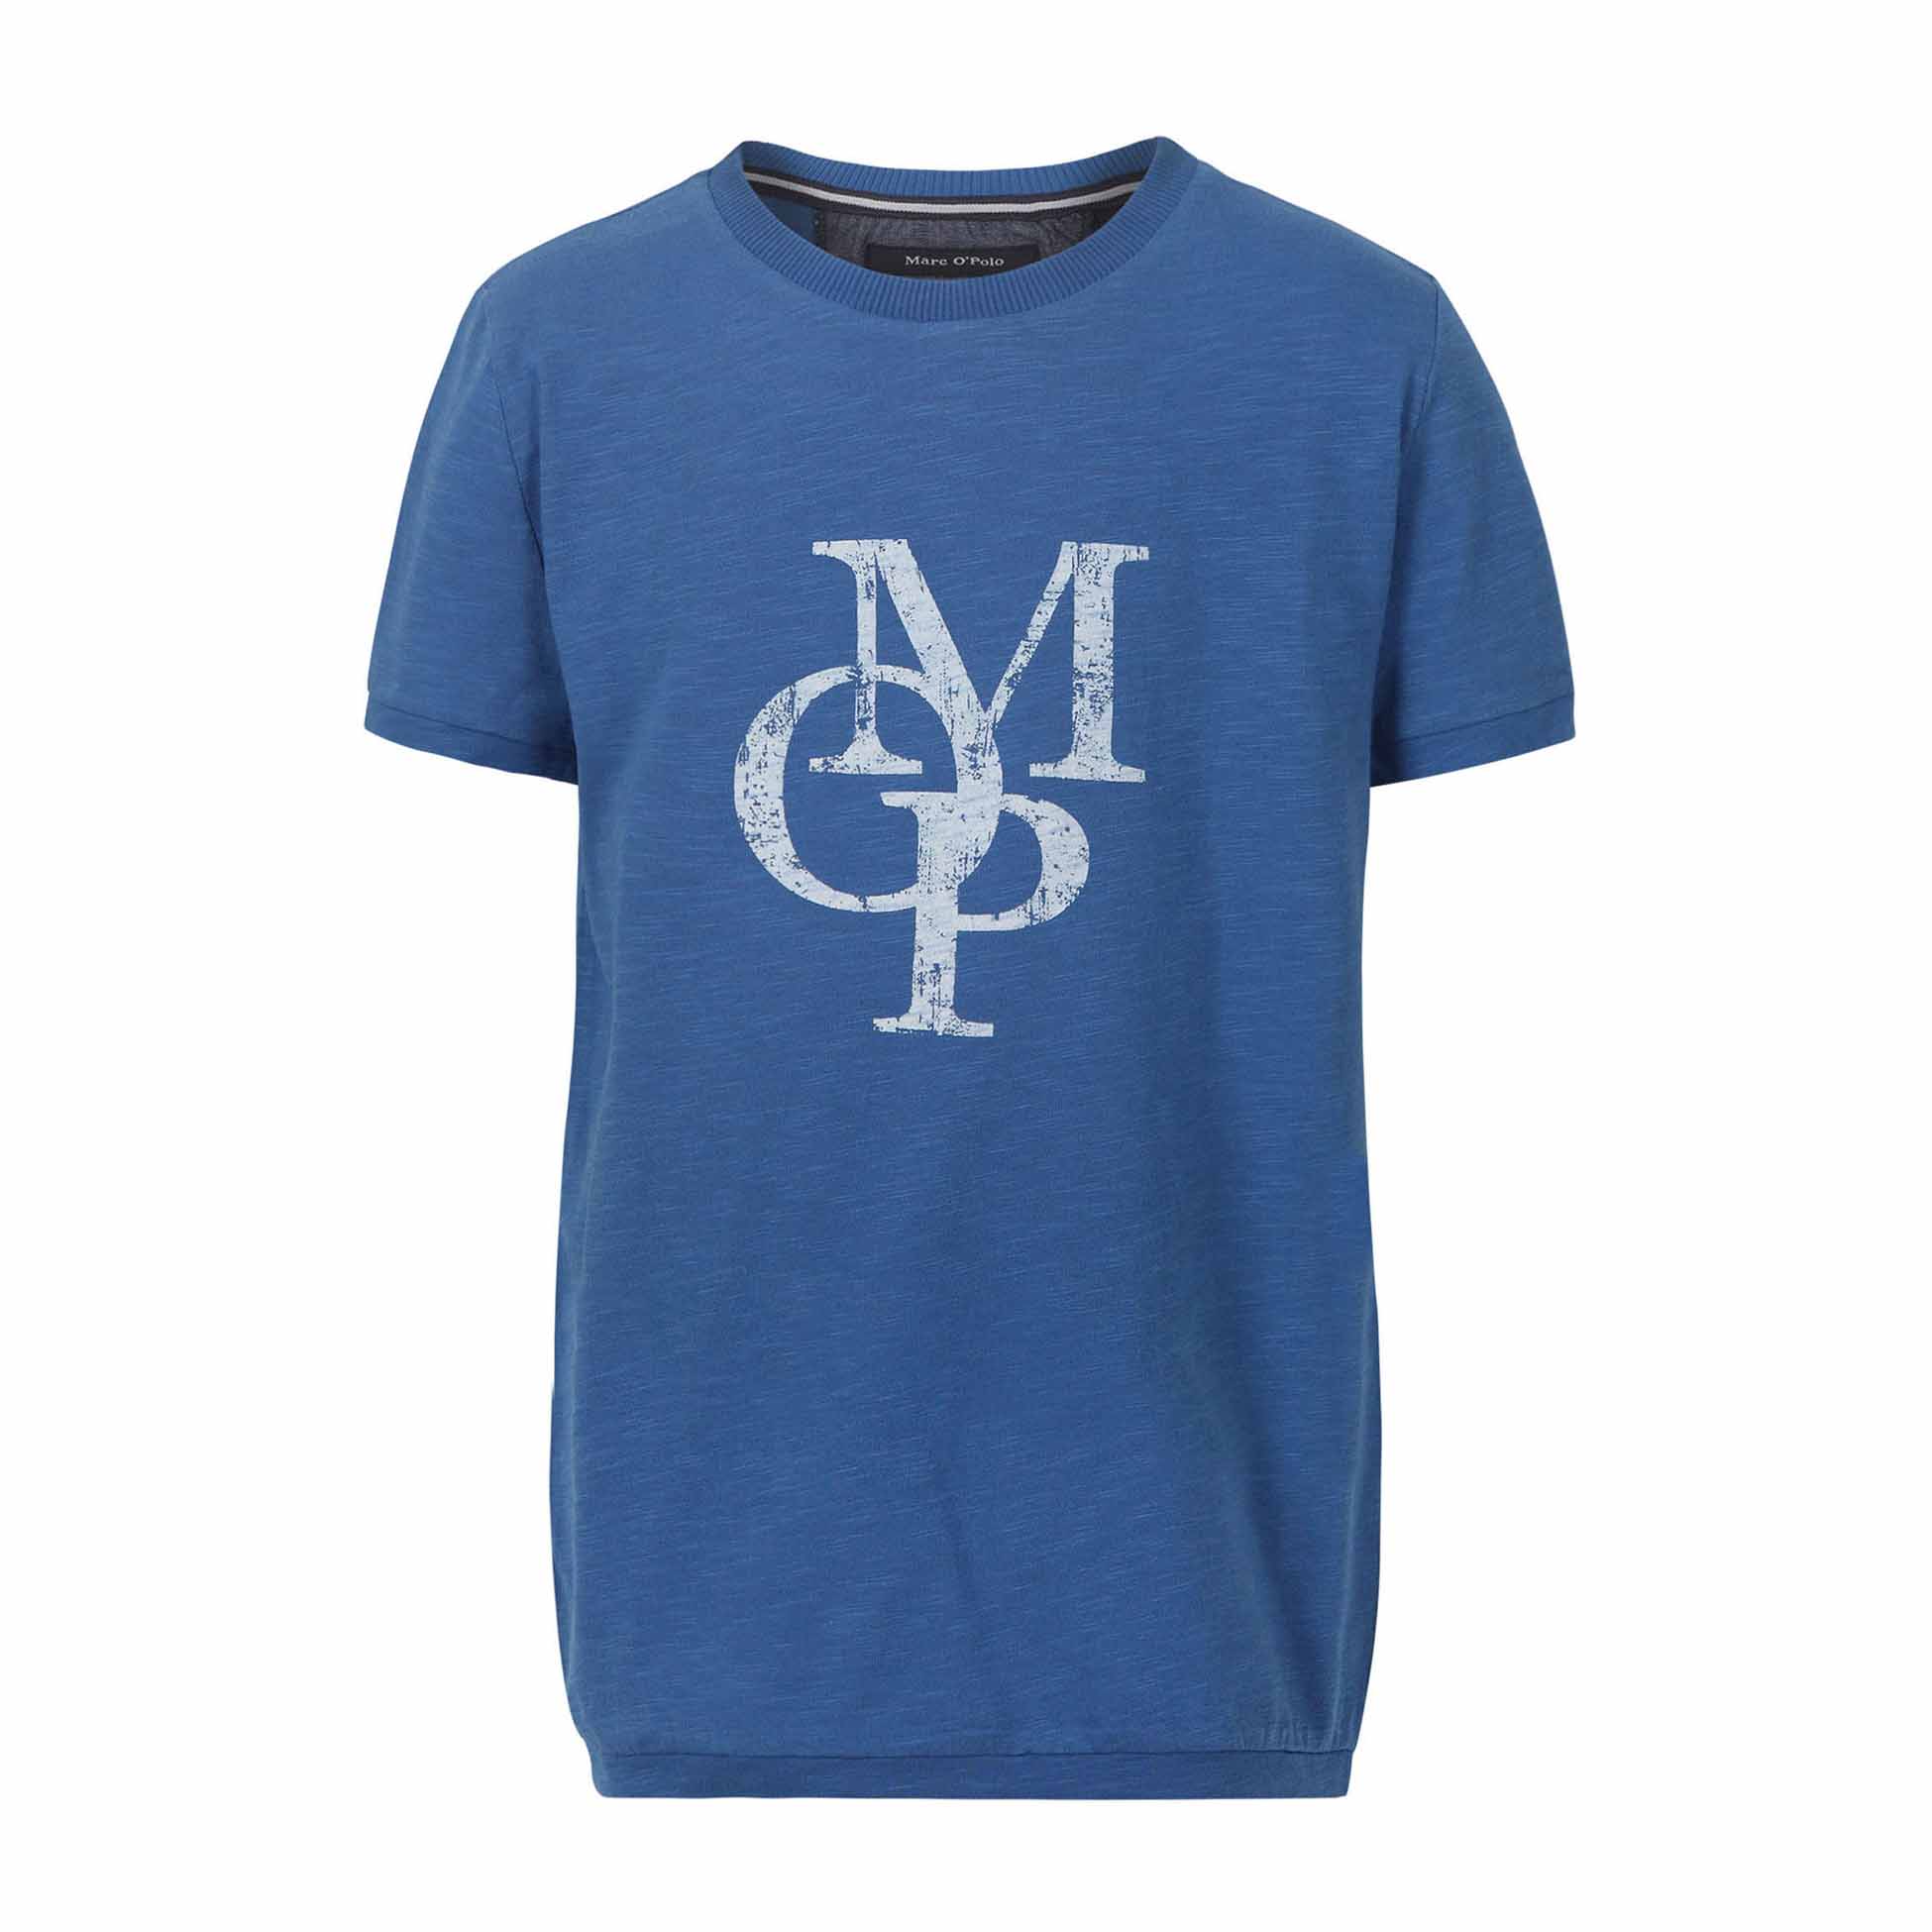 Chłopięcy T-shirt z logo, krótki rękaw, niebieski, Marc O'Polo